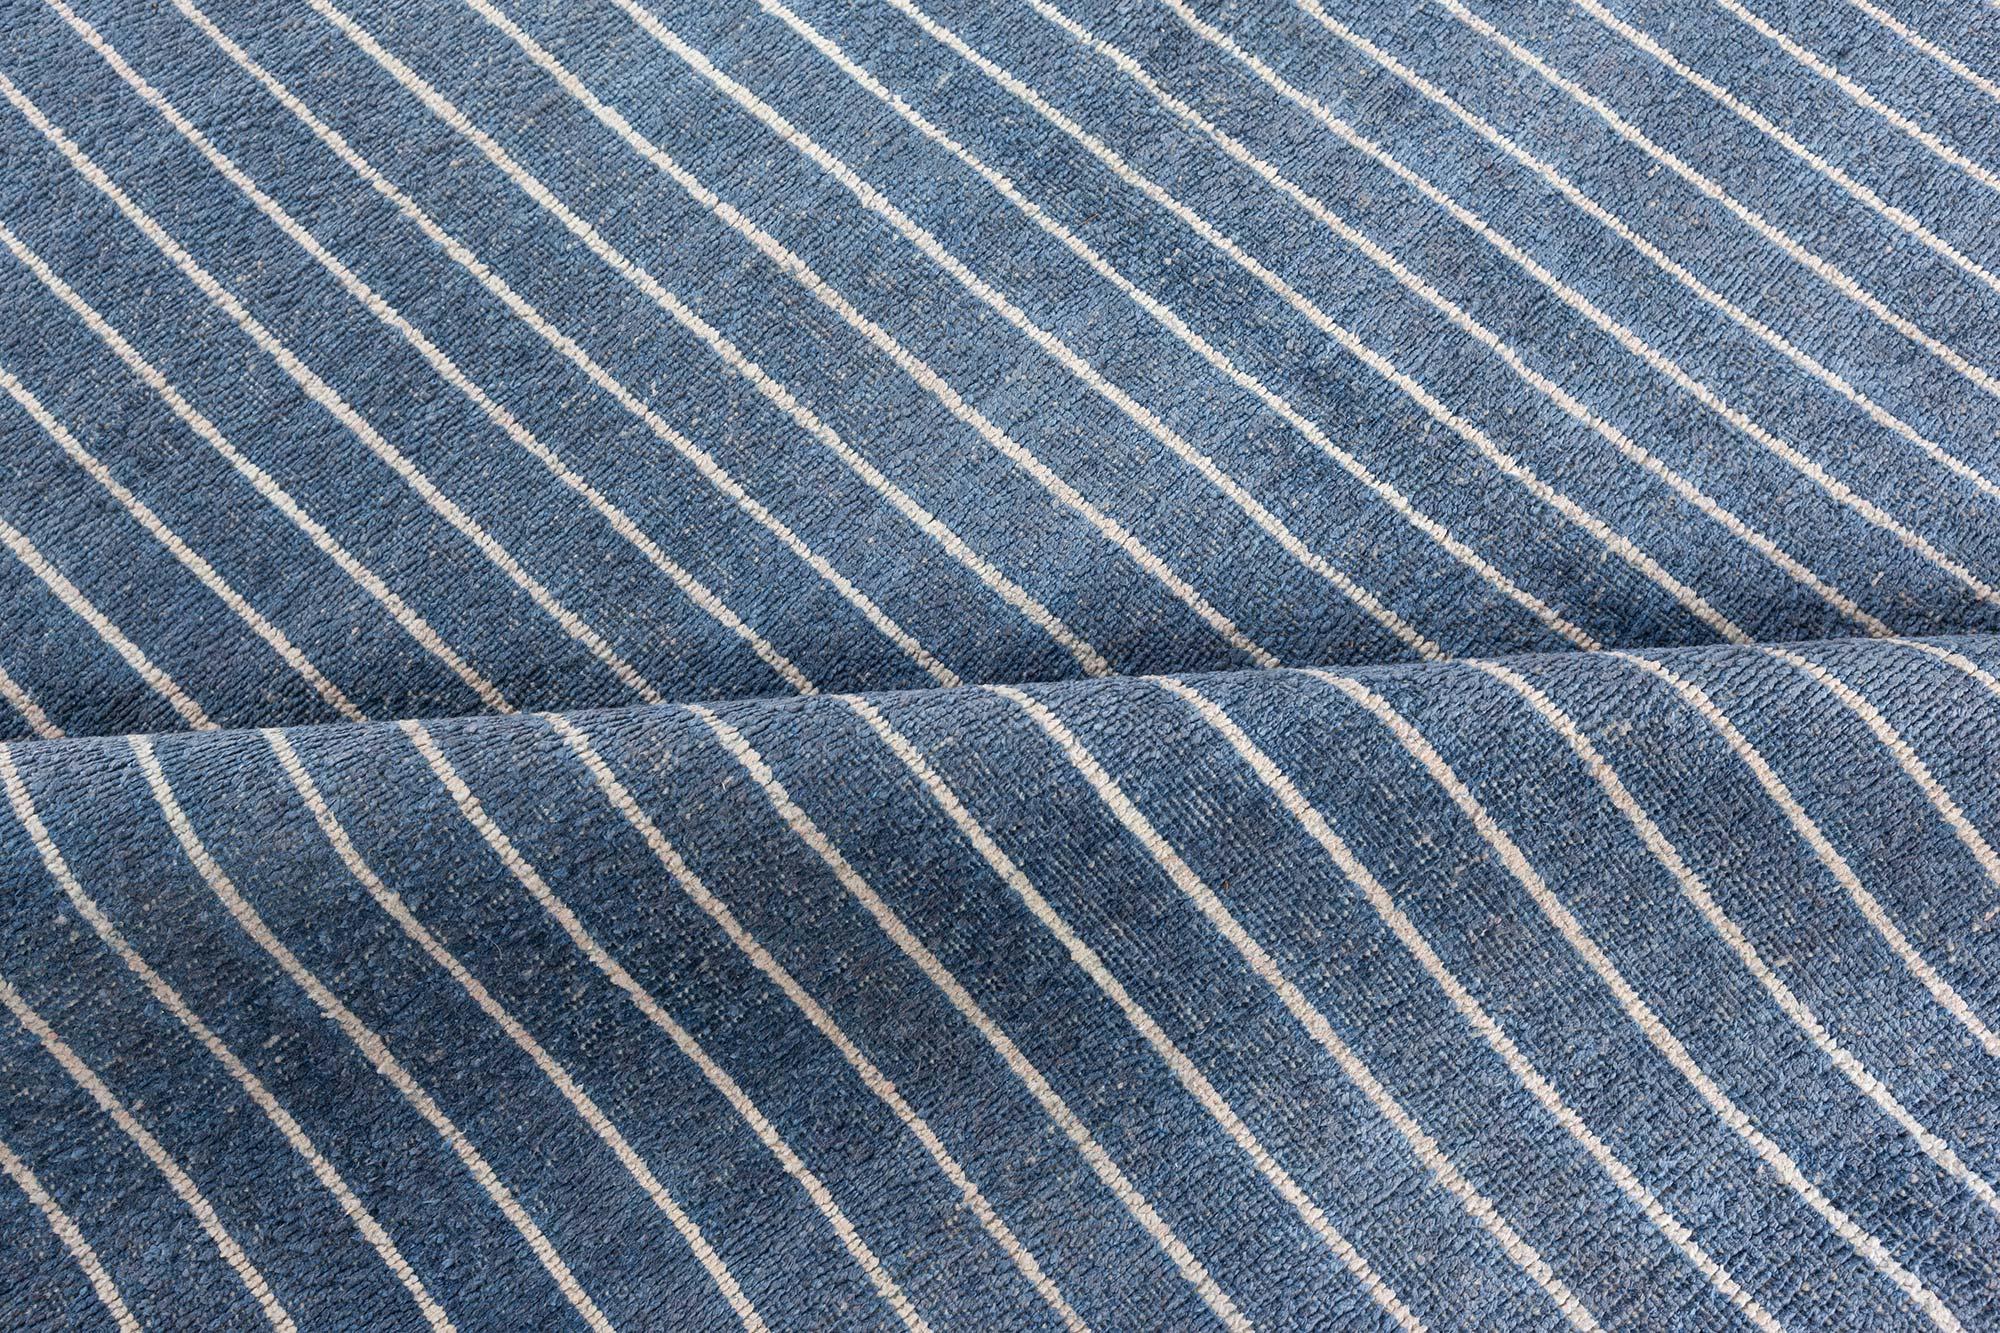 Blau-weiß gestreifter, handgefertigter Teppich von Doris Leslie Blau
Größe: 9'0